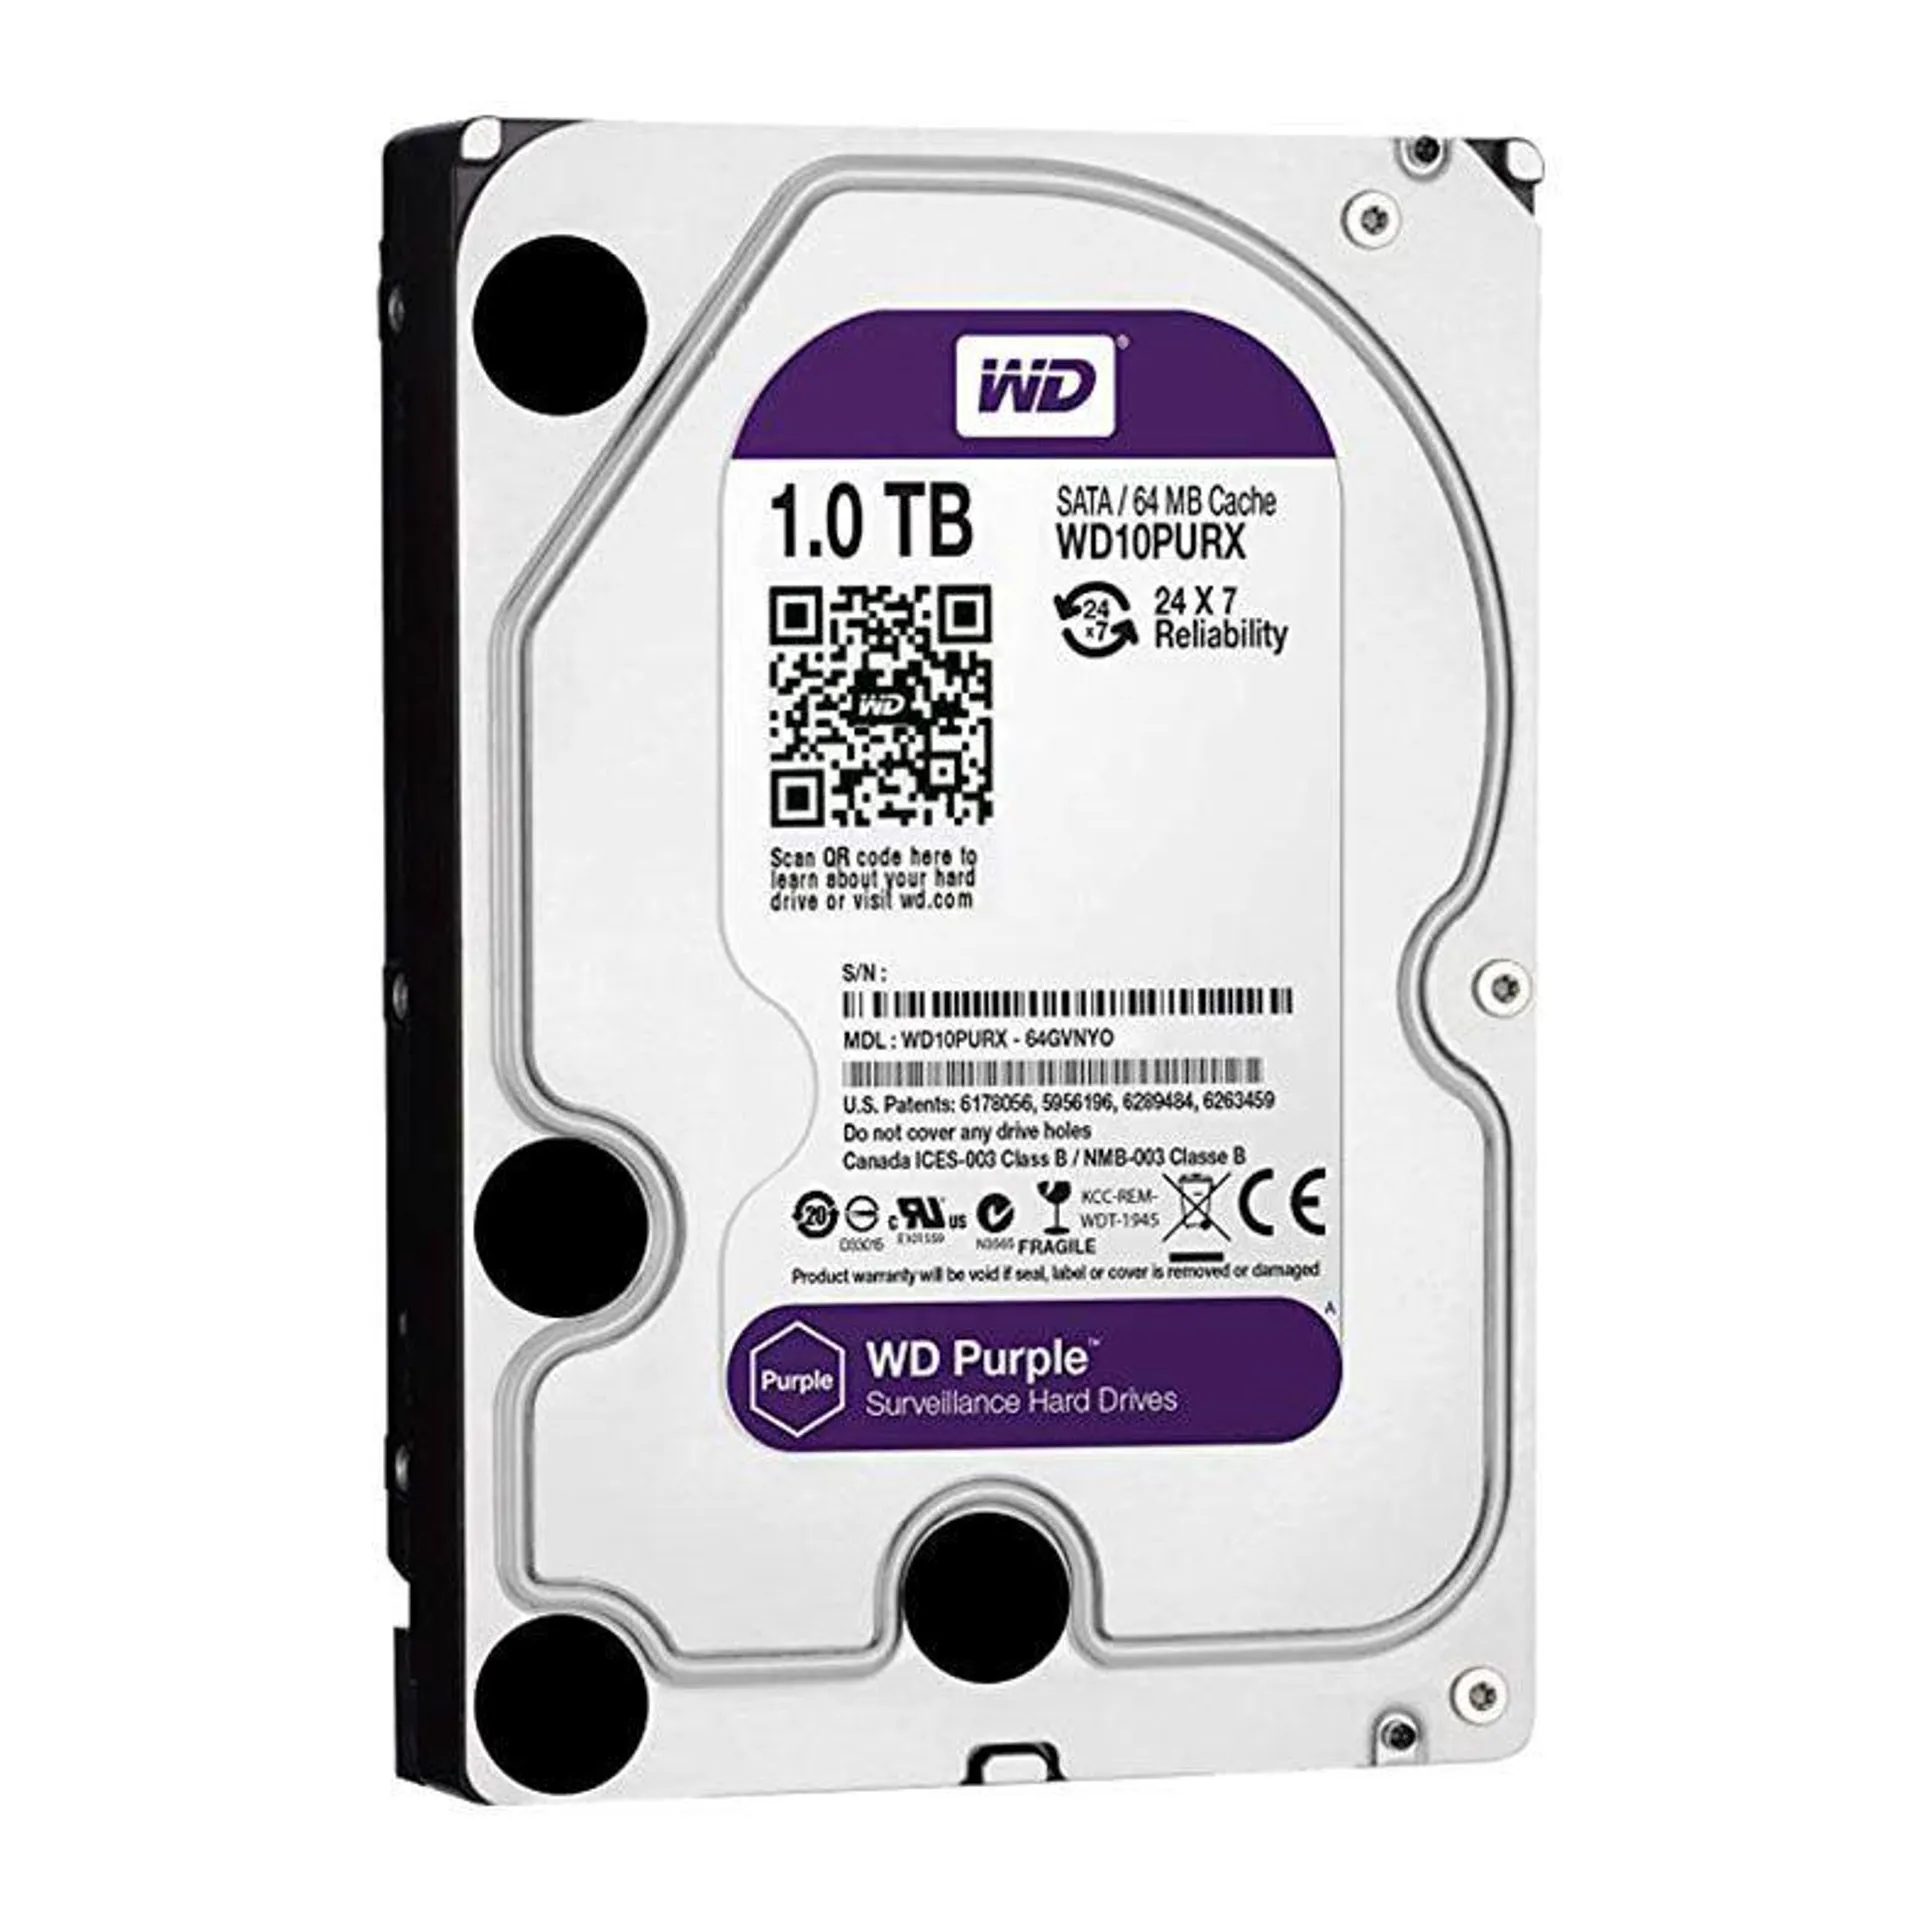 HD WD Purple 1TB, 7200 RPM, Sata III 6GB/s, Cache 64MB, WD10PURX